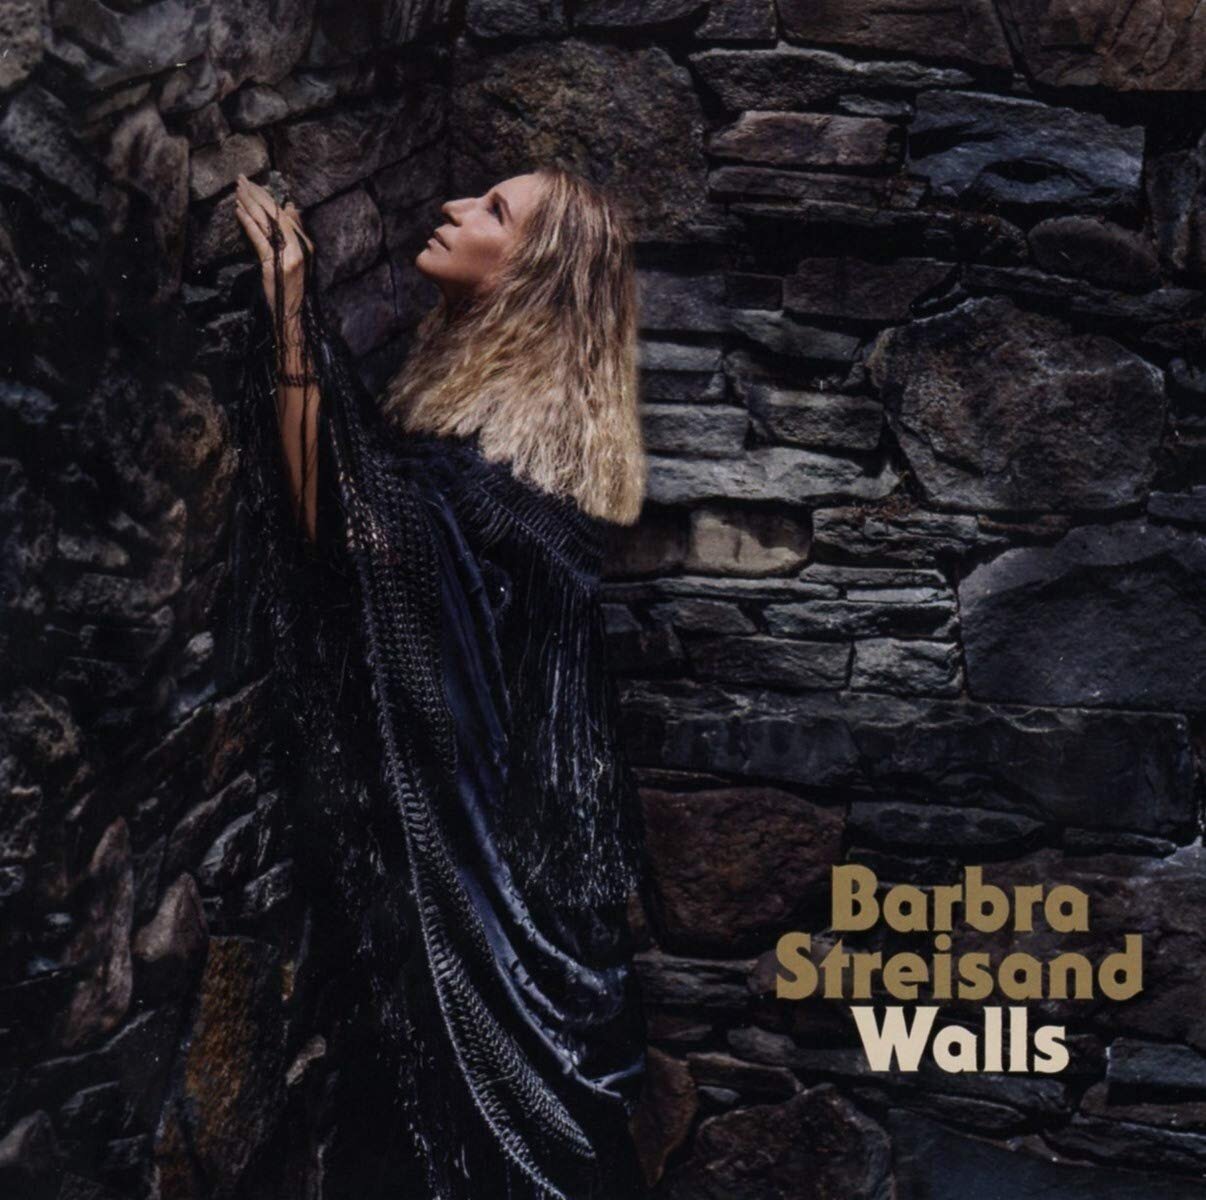 Barbra Streisand Walls.jpg